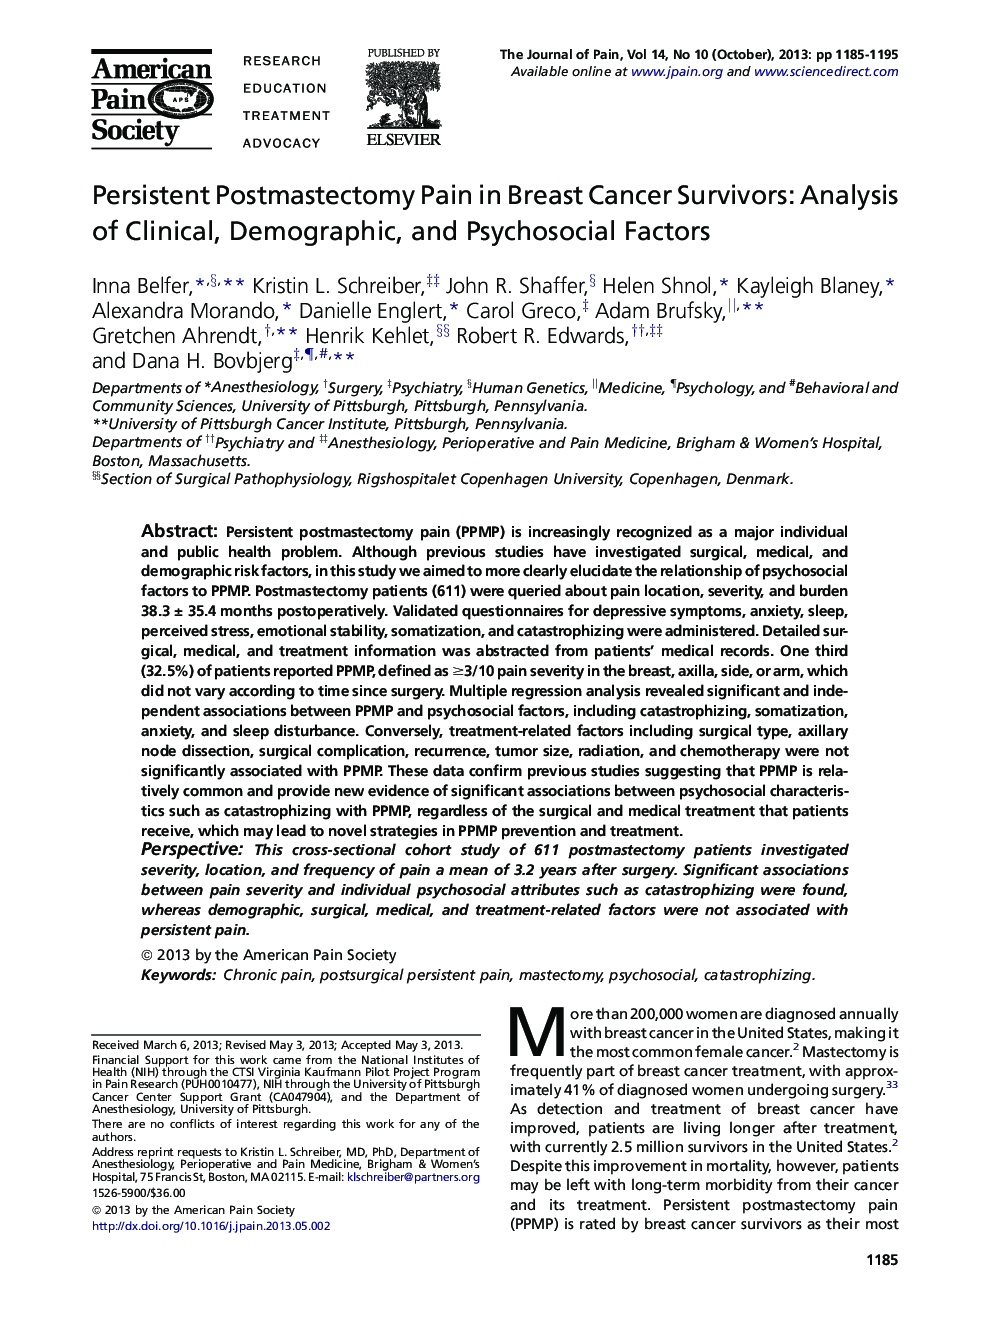 پاتوژن پاستومکتومی پایدار در سربازان سرطان سینه: تجزیه و تحلیل عوامل بالینی، جمعیتی و روانی-اجتماعی 